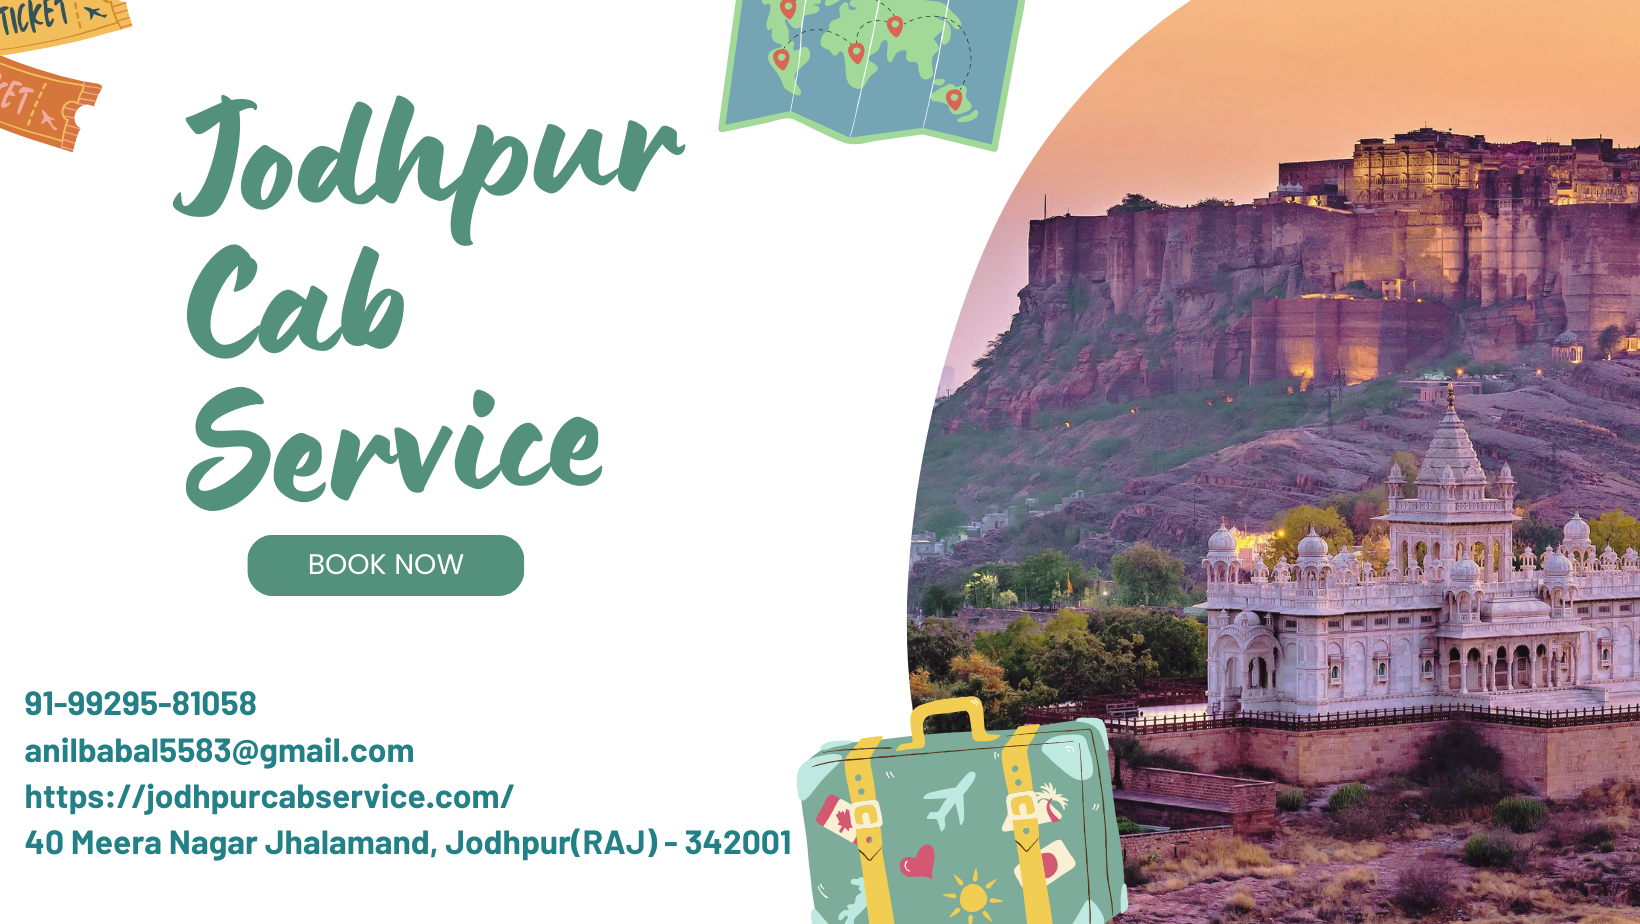 jodhpur cab service